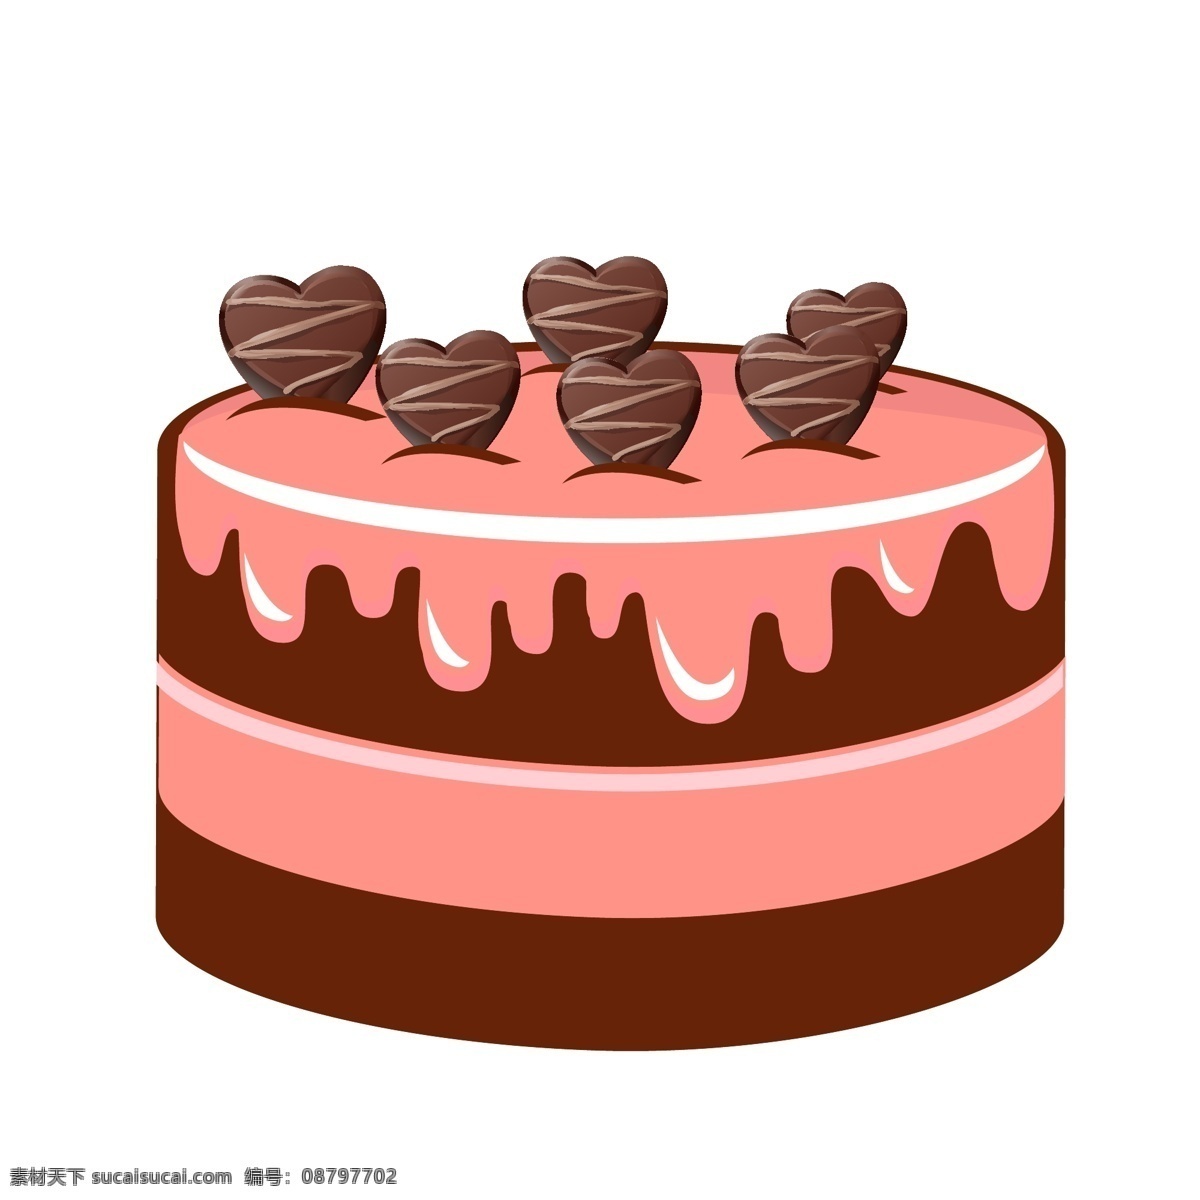 手绘 心形 巧克力 蛋糕 插画 手绘蛋糕 蛋糕插画 巧克力蛋糕 奶油蛋糕 插图 心形巧克力 情人节